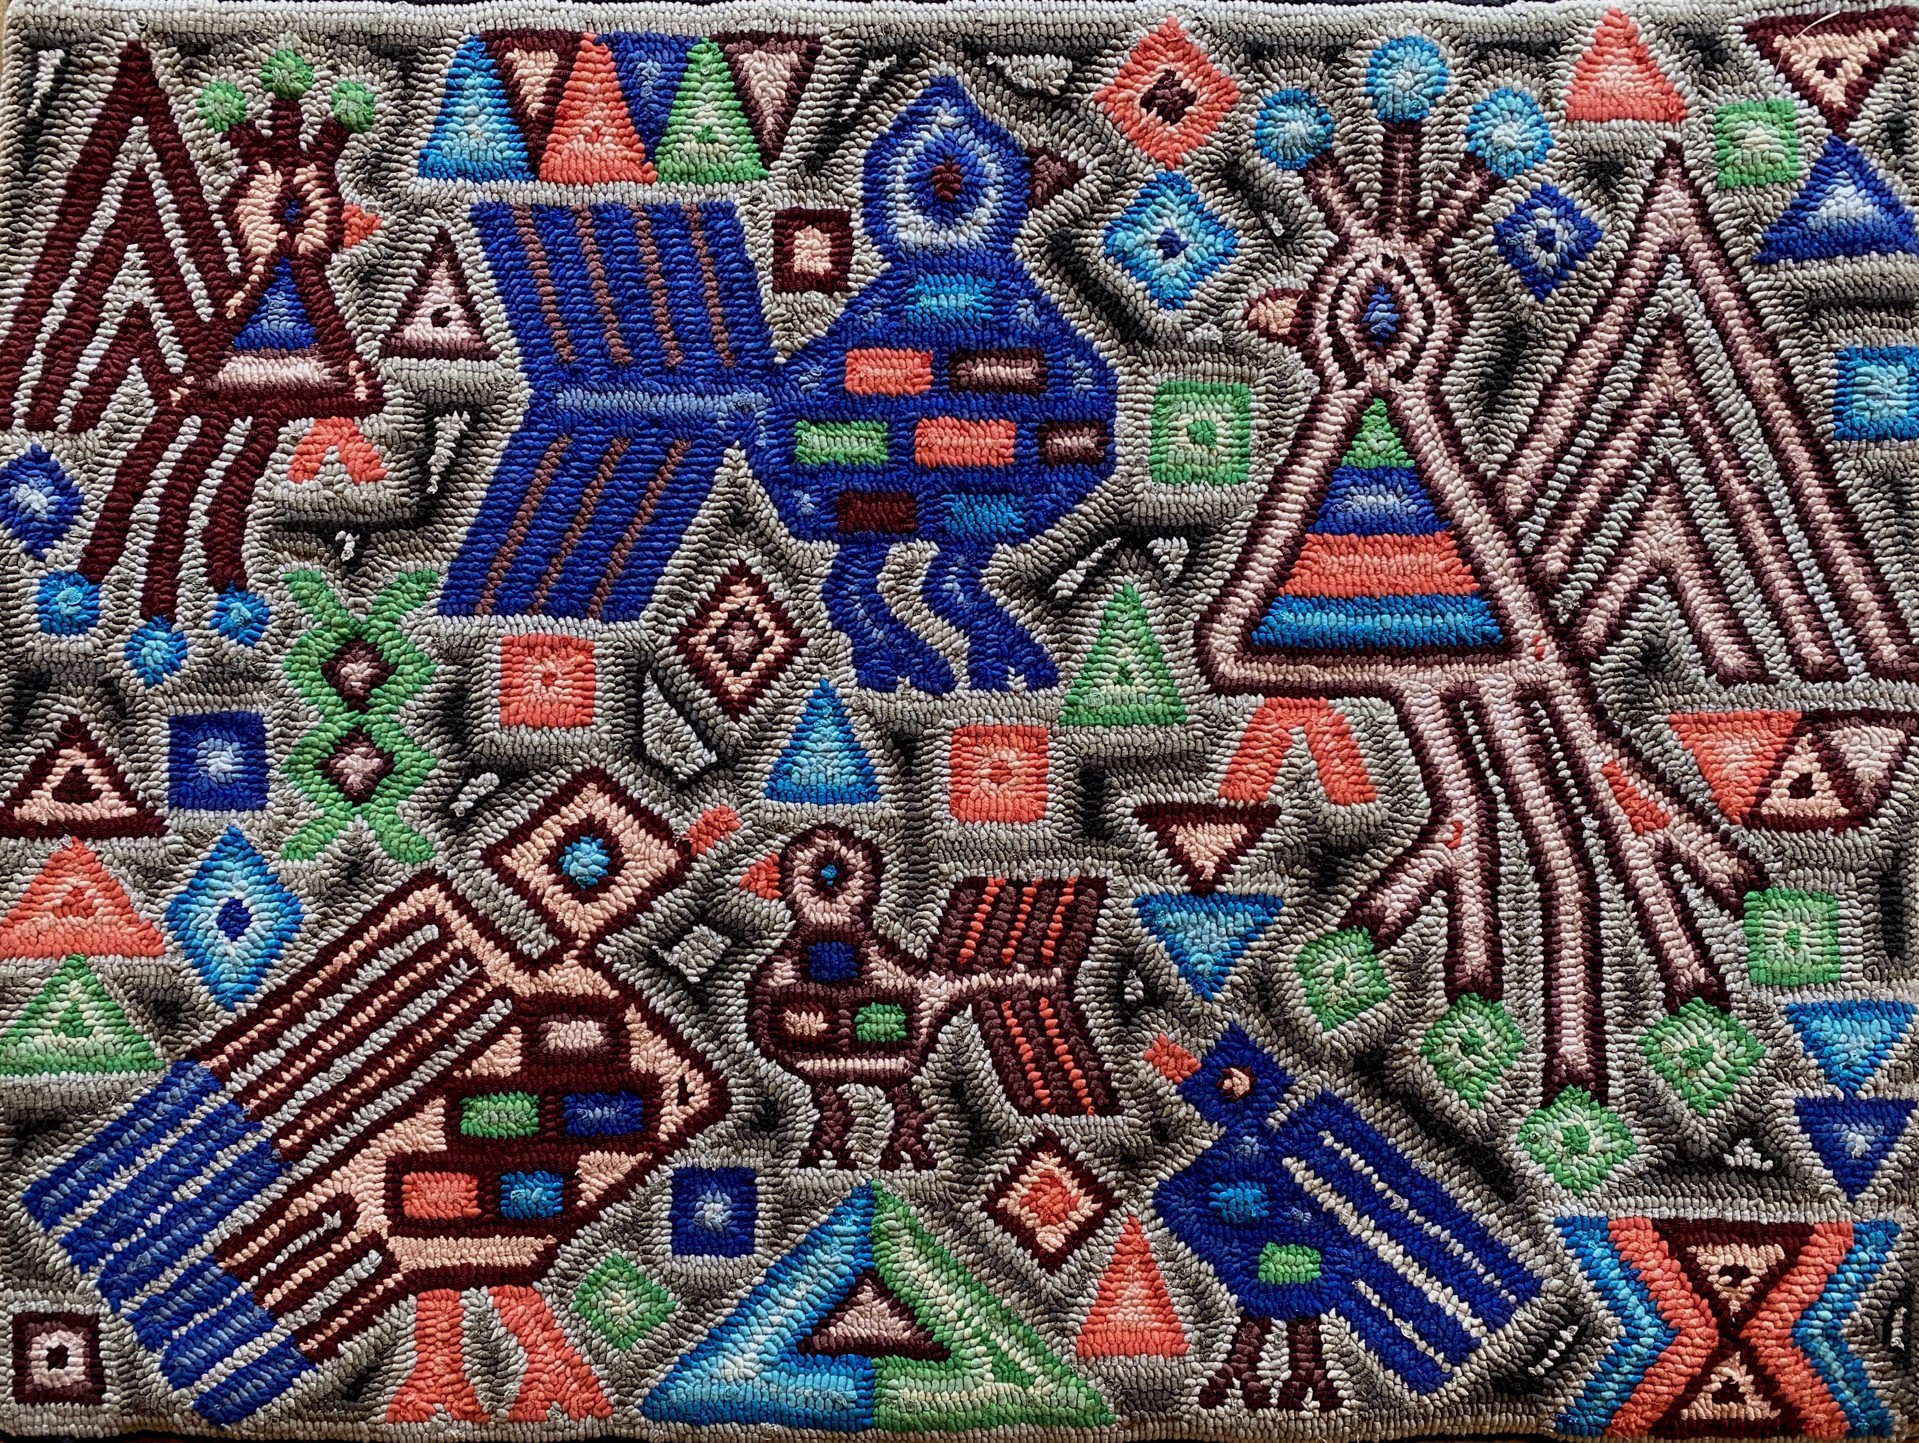 Los pajaros en los textiles (The Birds in Textiles) by Multicolores